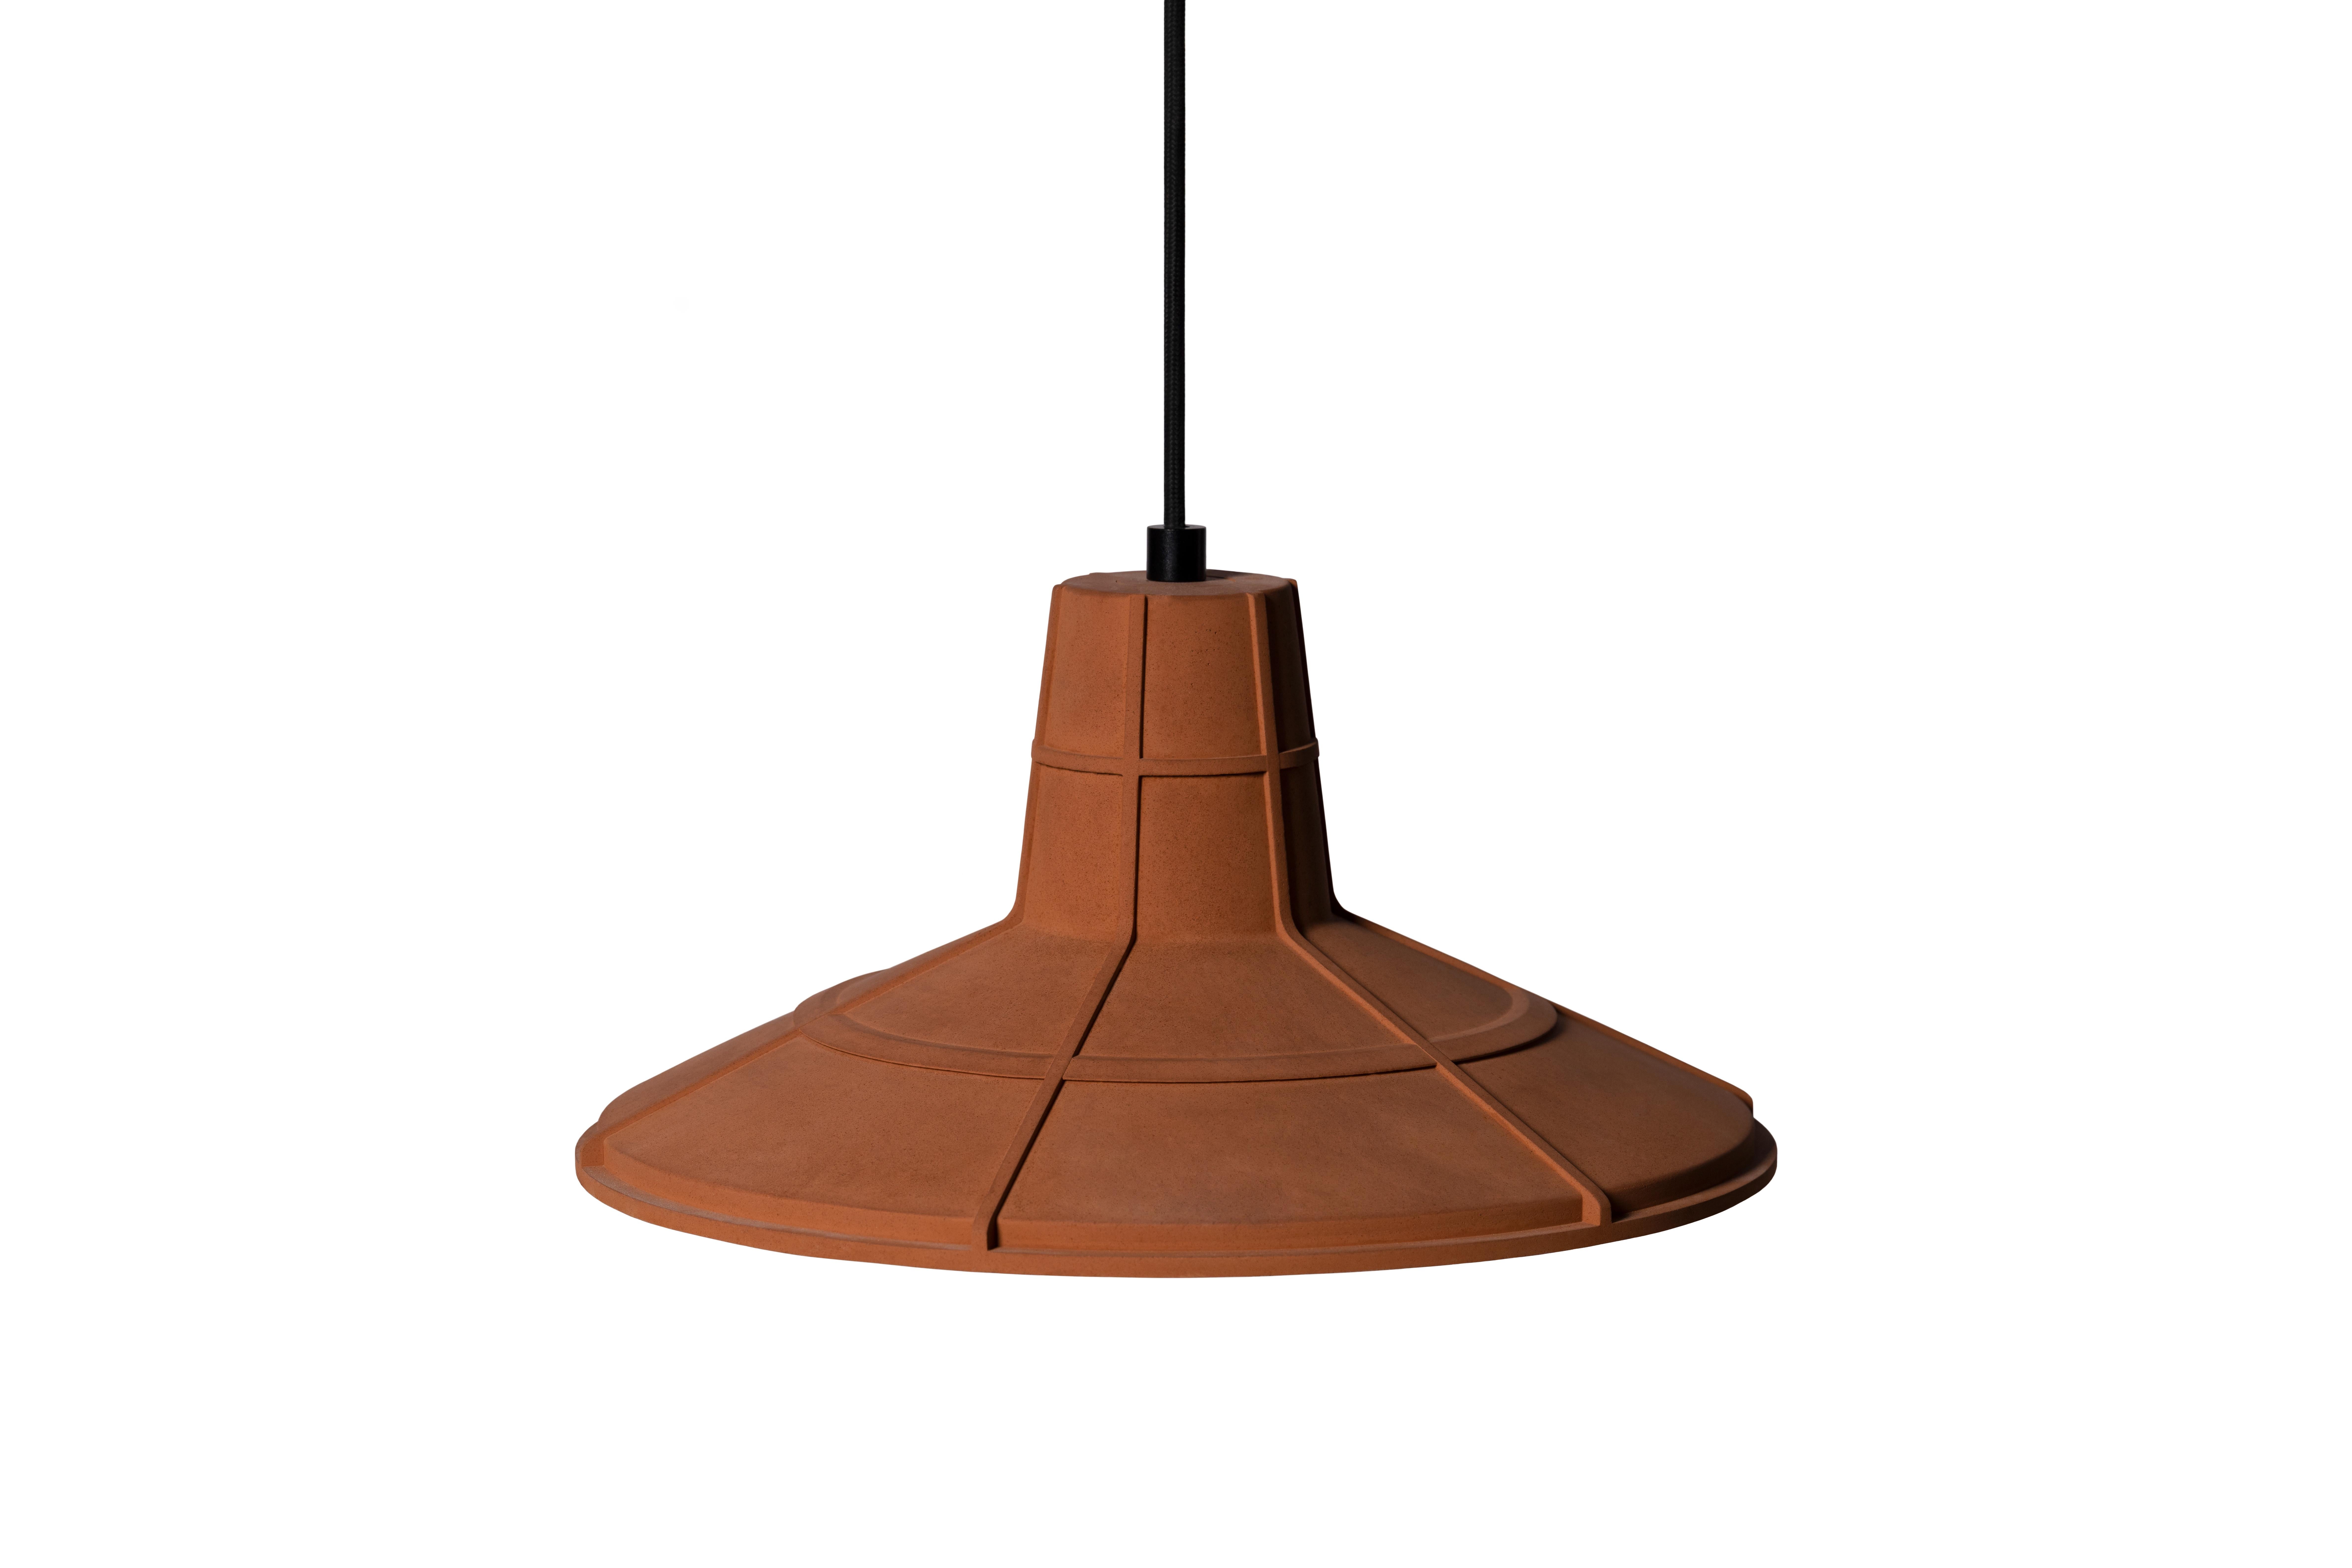 Lampe suspendue 'L' par Nongzao x Bentu design.
Matériau : Terre cuite 
Couleur : orange terreux

Mesures : 17.5 cm de haut, 36,5 cm de diamètre
Fil : 3 mètres (noir)
Type de lampe : AC 100-240V 50-60Hz  9W - Comptable avec le système électrique